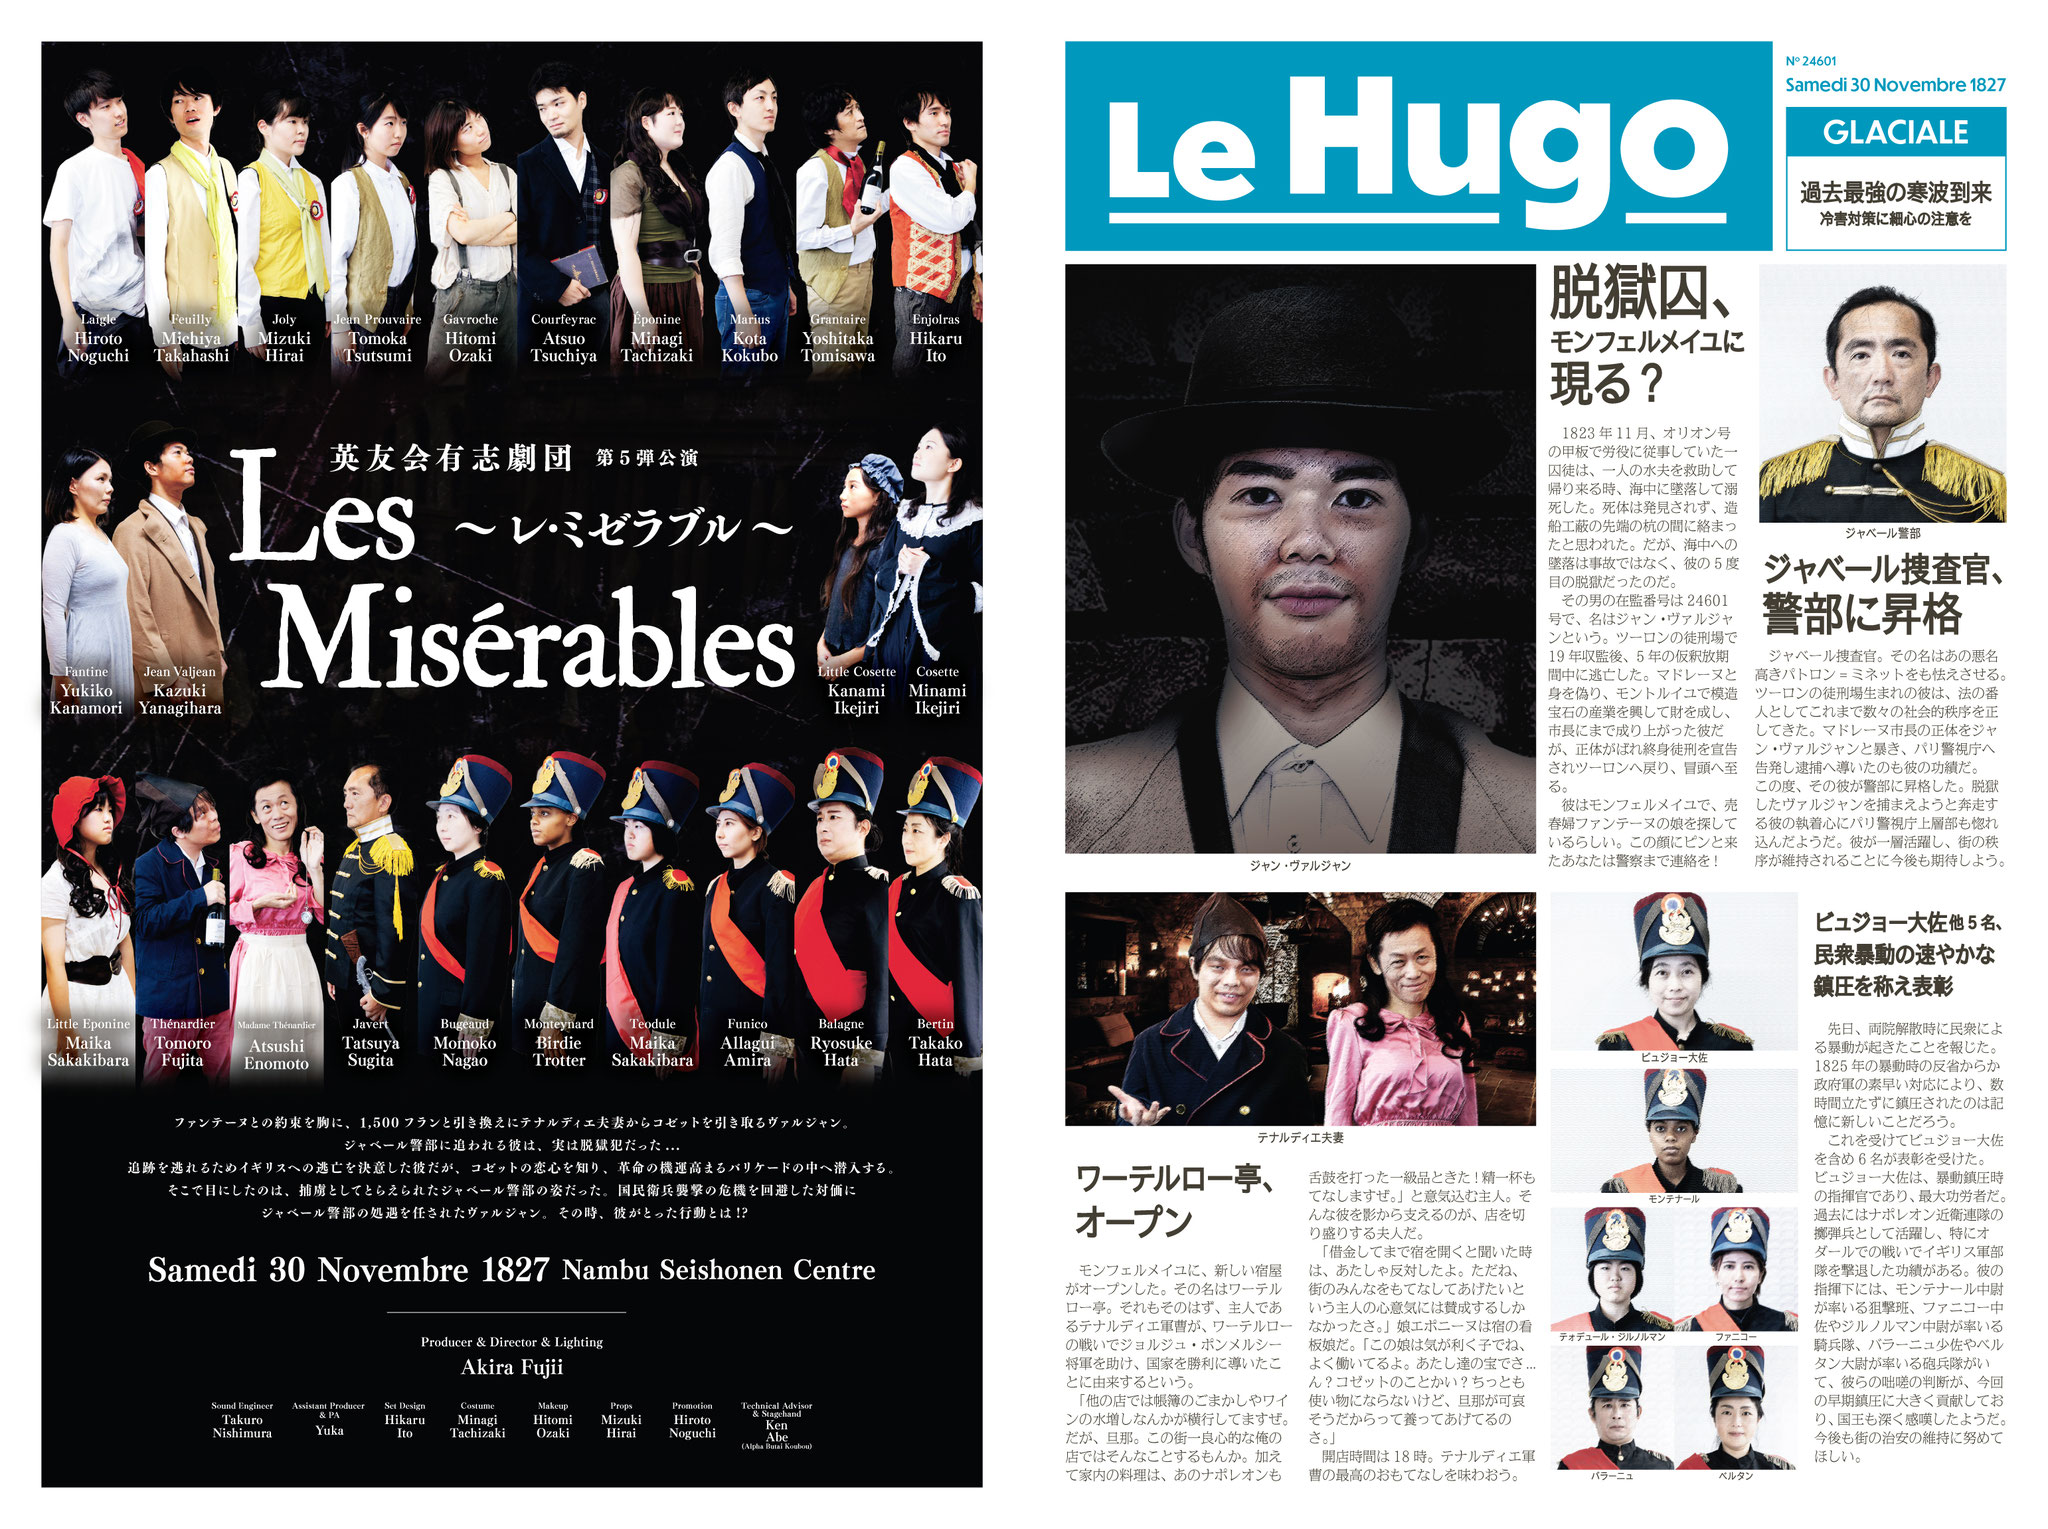 レミゼラブル タブロイド新聞「Le Hugo」４ページ、１ページ